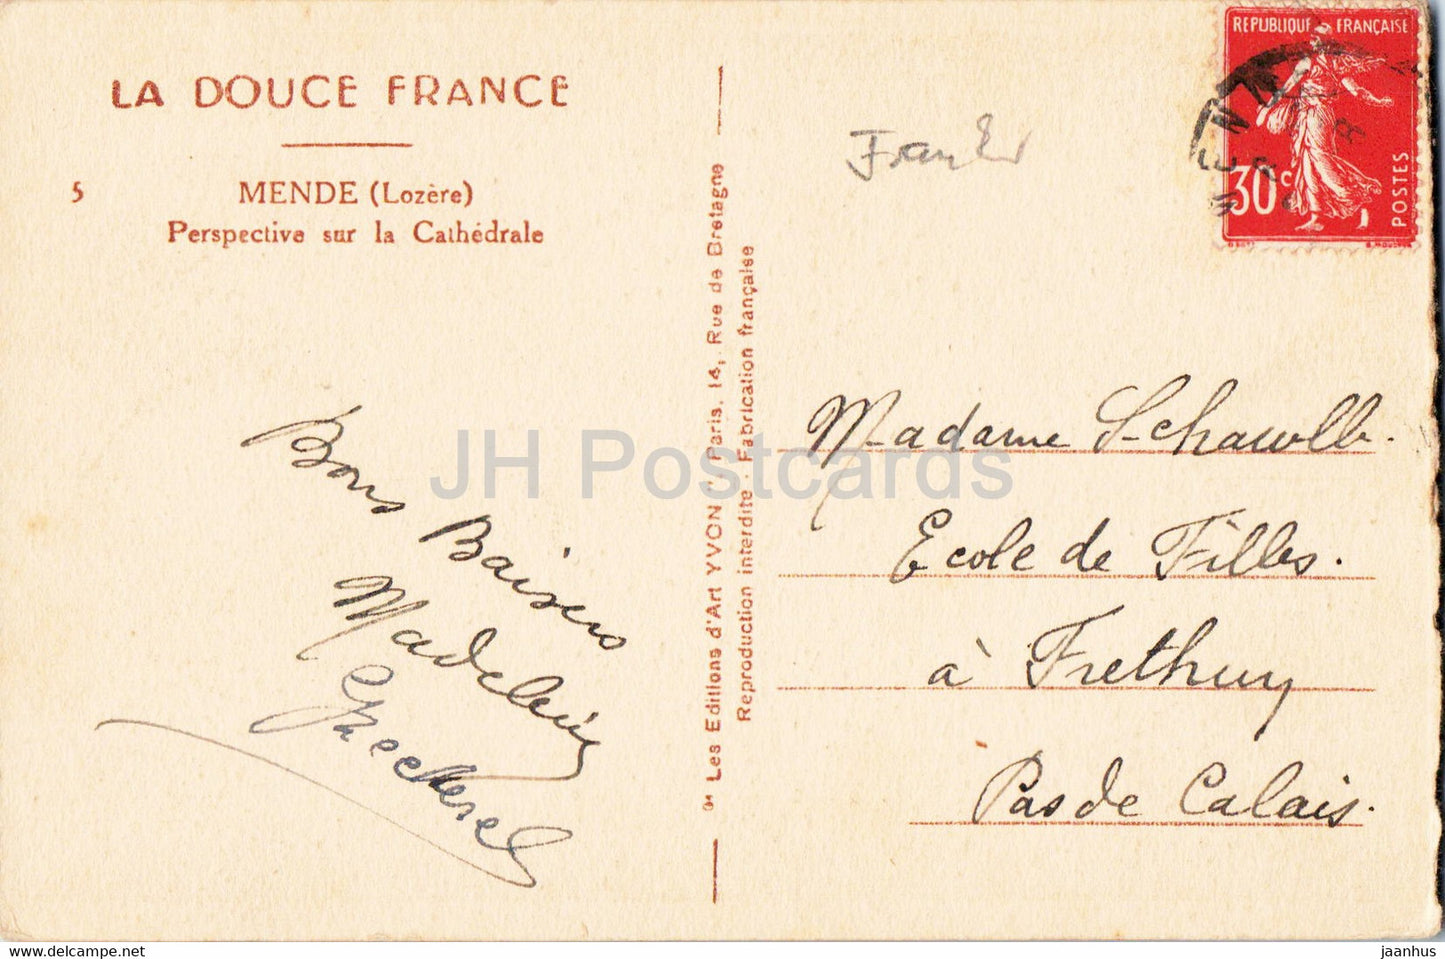 Mende - Perspective sur la Cathédrale - La Douce France - 5 - carte postale ancienne - France - occasion